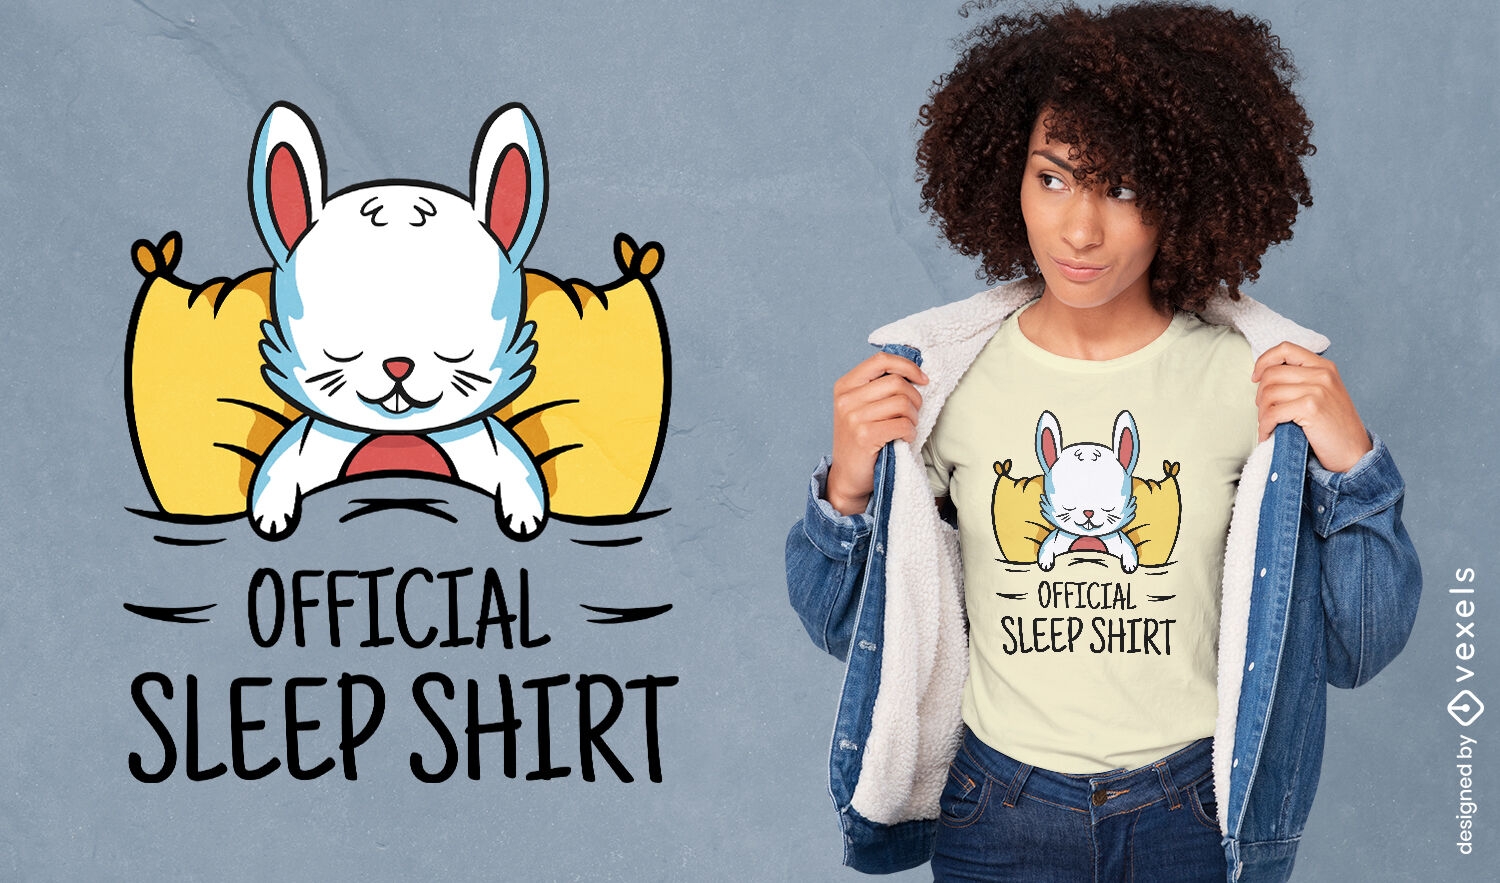 Official sleep shirt rabbit t-shirt design